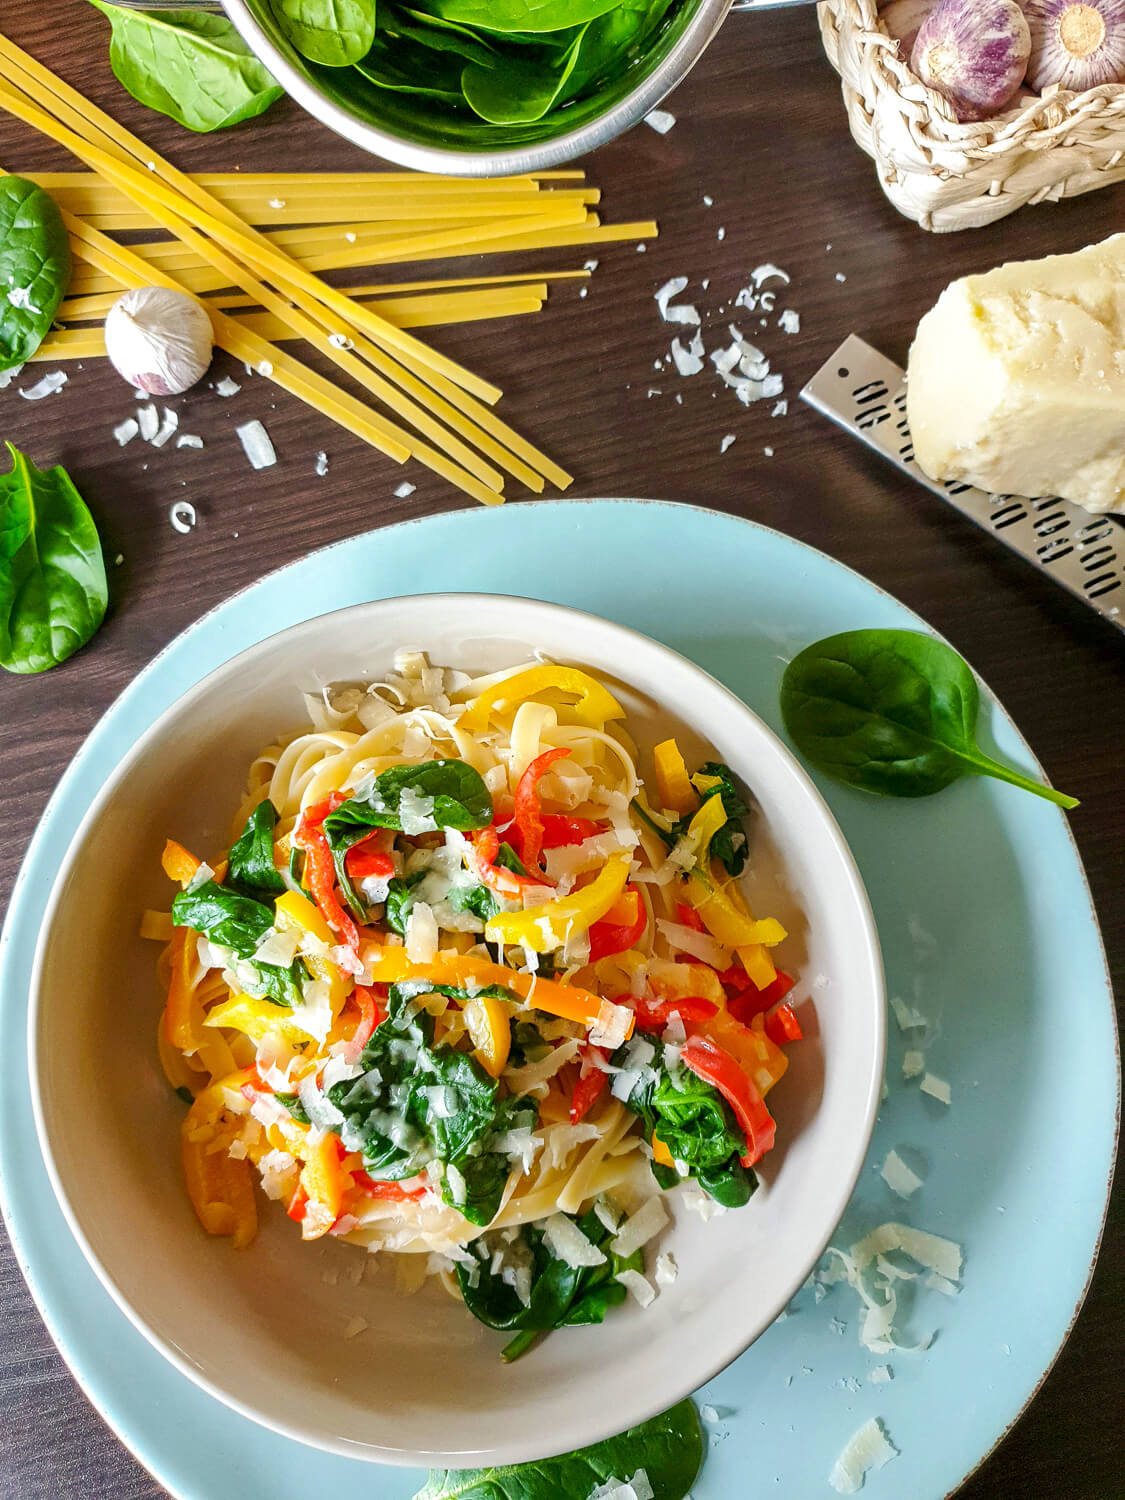 Schnelle Nudelpfanne mit Spinat, Paprika und Parmesan - ein gesundes Mittagessen, das auch Kindern richtig gut schmeckt